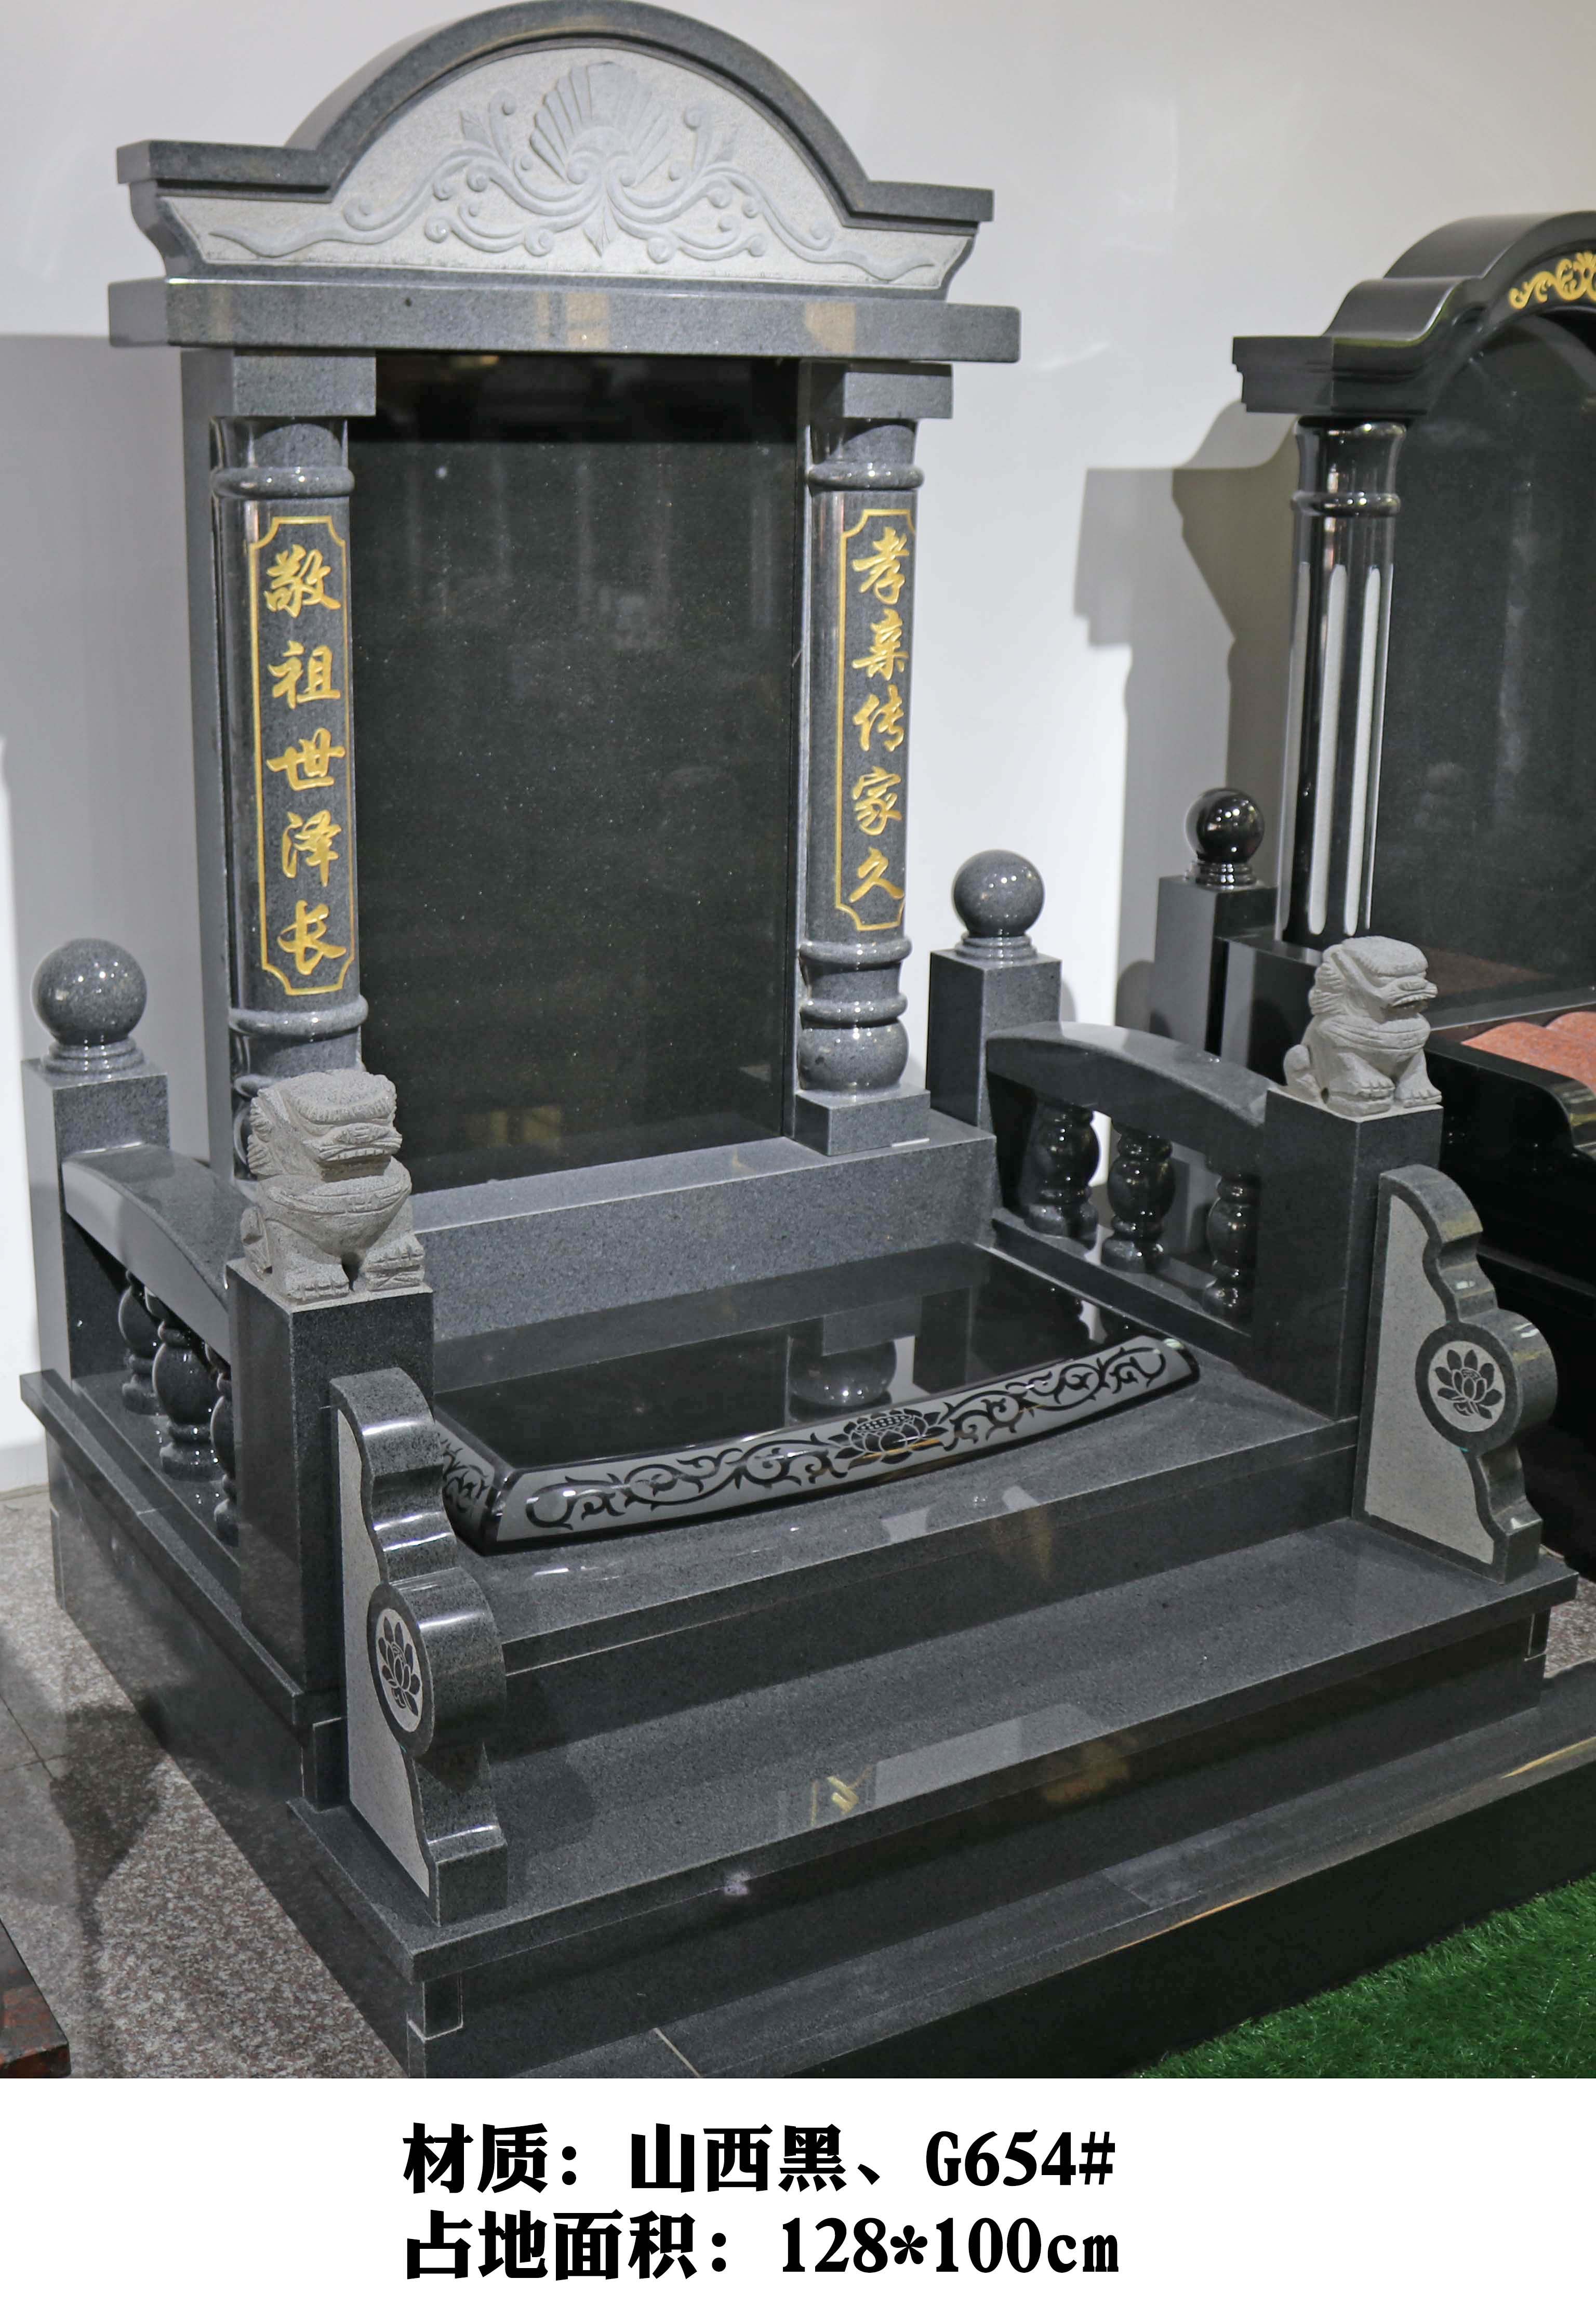 四川攀枝花墓碑对联体现孝道文化，具有深刻文化内涵